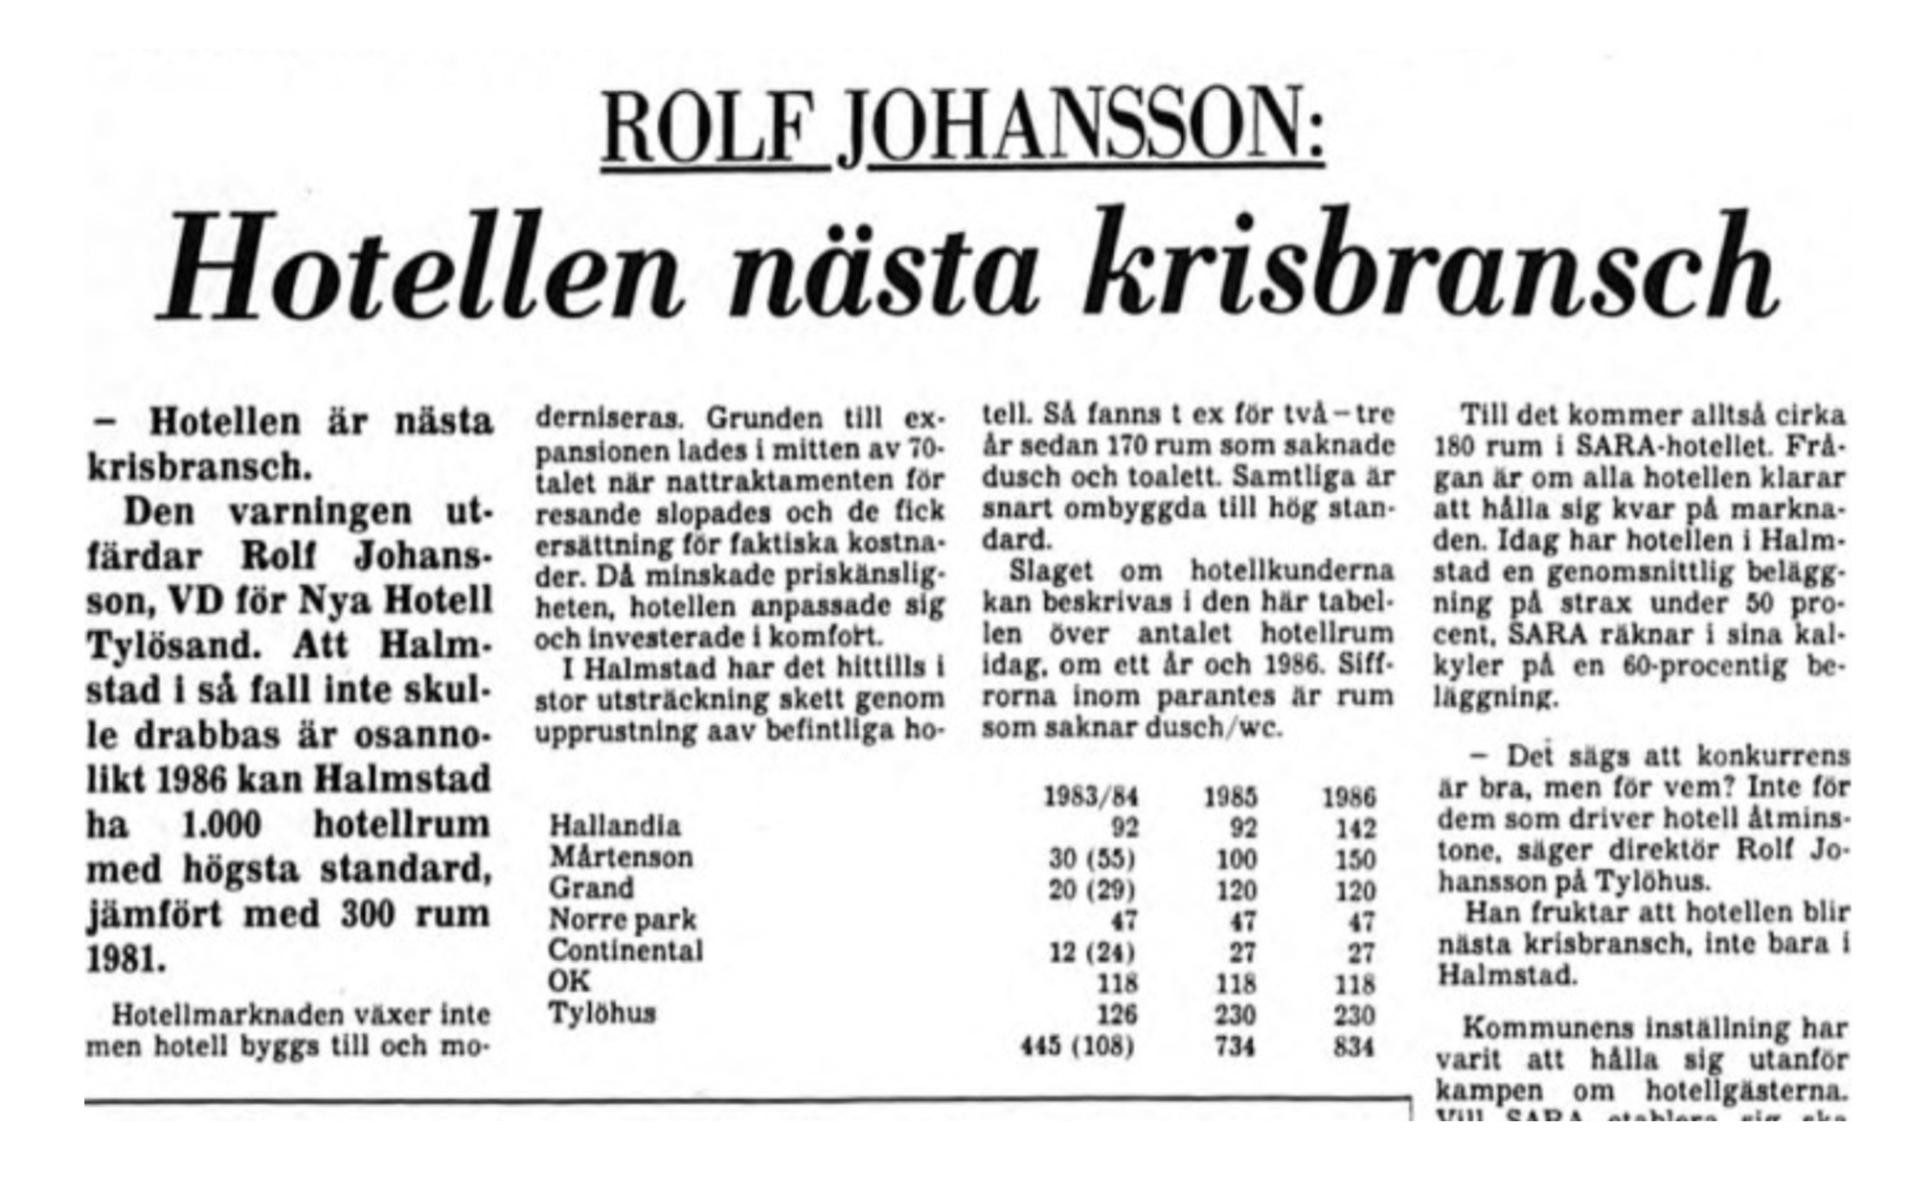 Rolf Johansson, VD för Hotell Tylösand, slog larm. 1981 fanns det 300 rum med högsta standard i Halmstad. Tre år senare fanns 1 000. Fanns det underlag för den enorma ökningen?